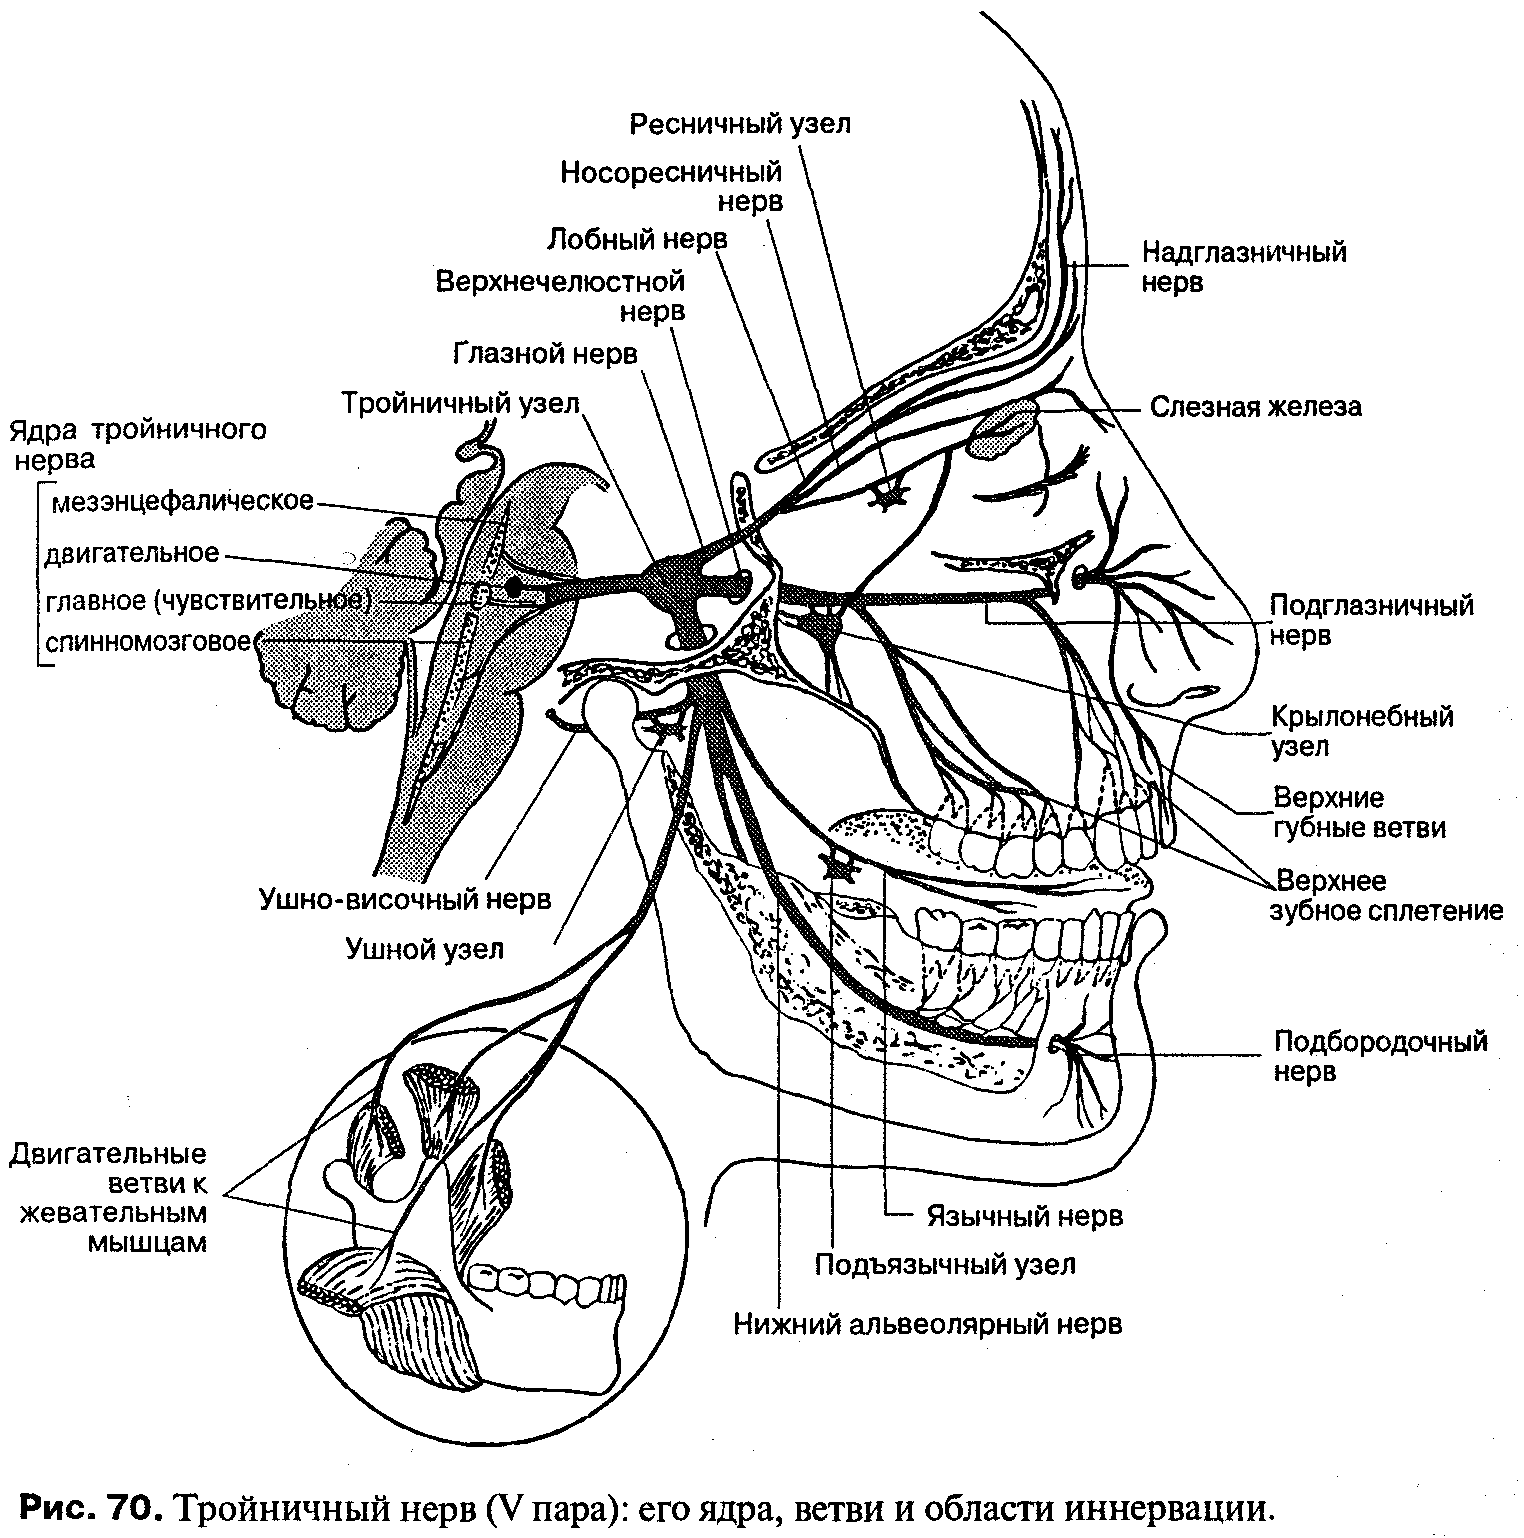 Тройничный нерв справа